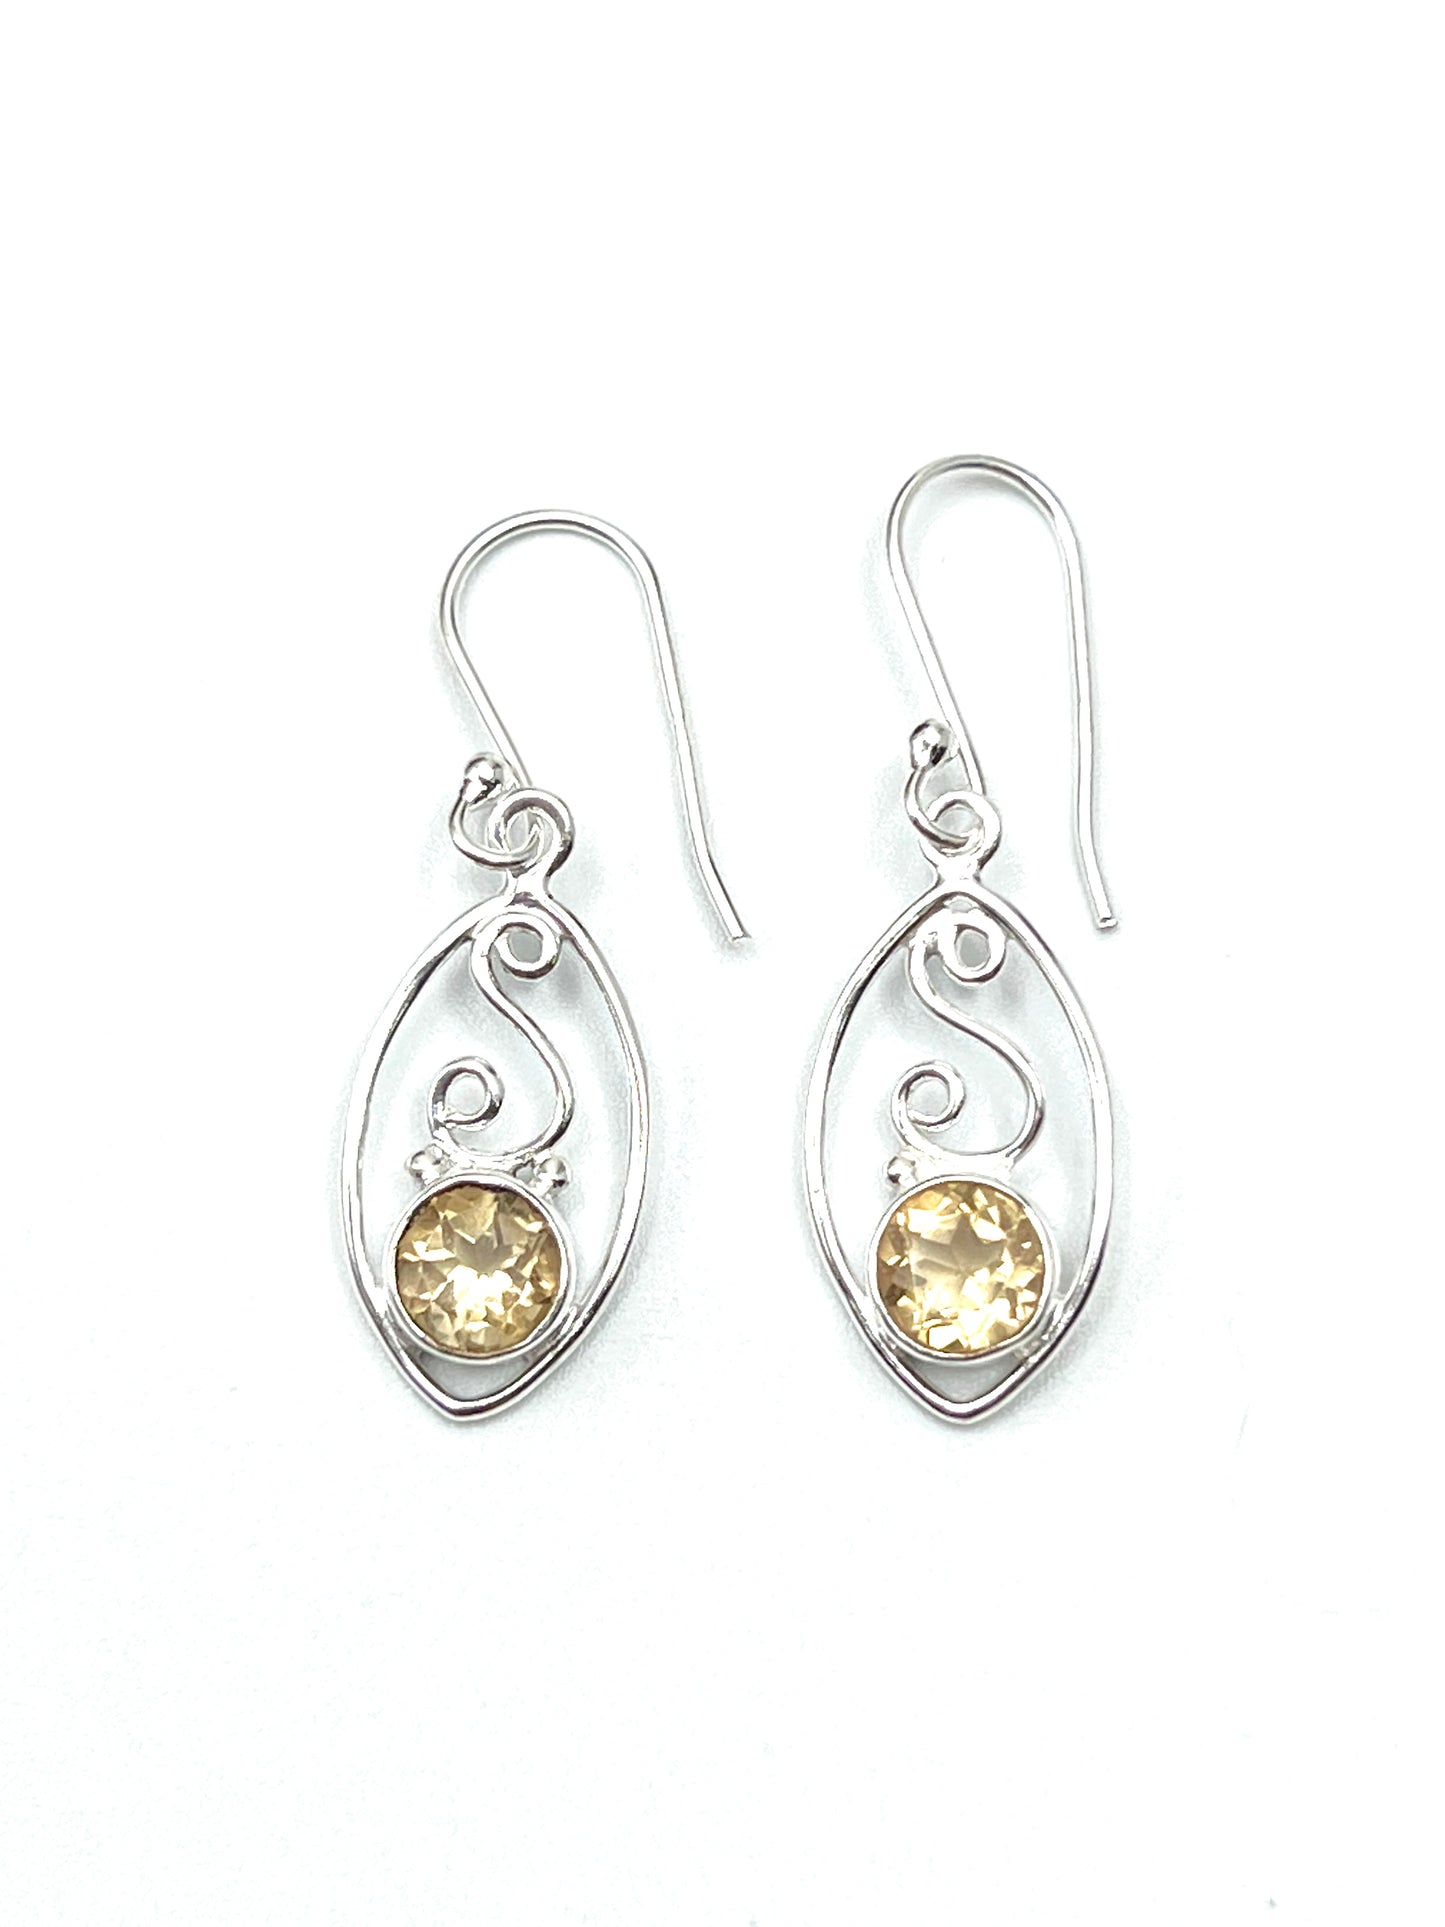 Gemstone Swirl Earrings